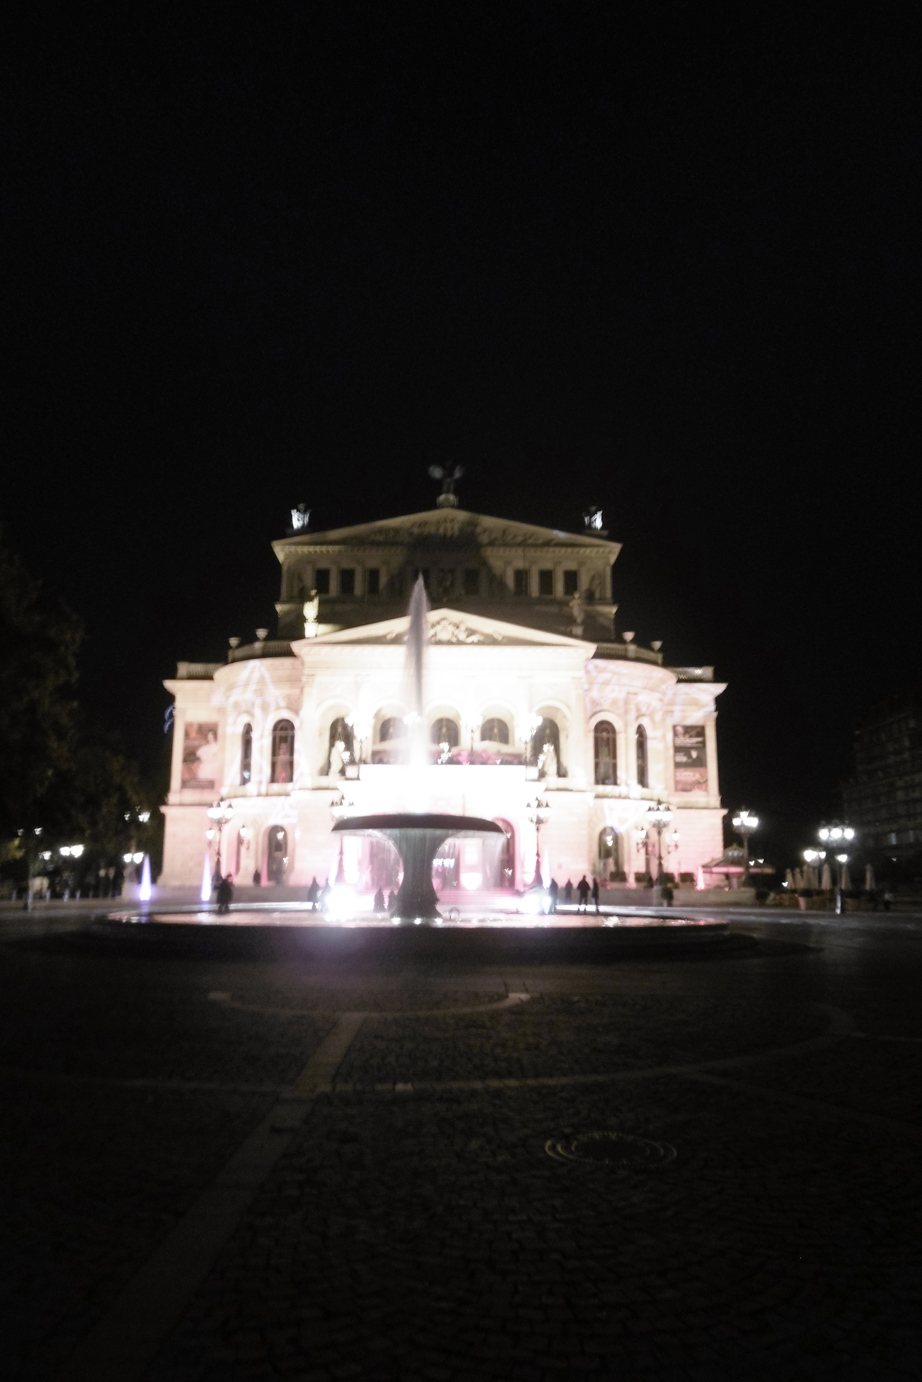 die Alte Oper Frankfurt in nächtlicher Illumination